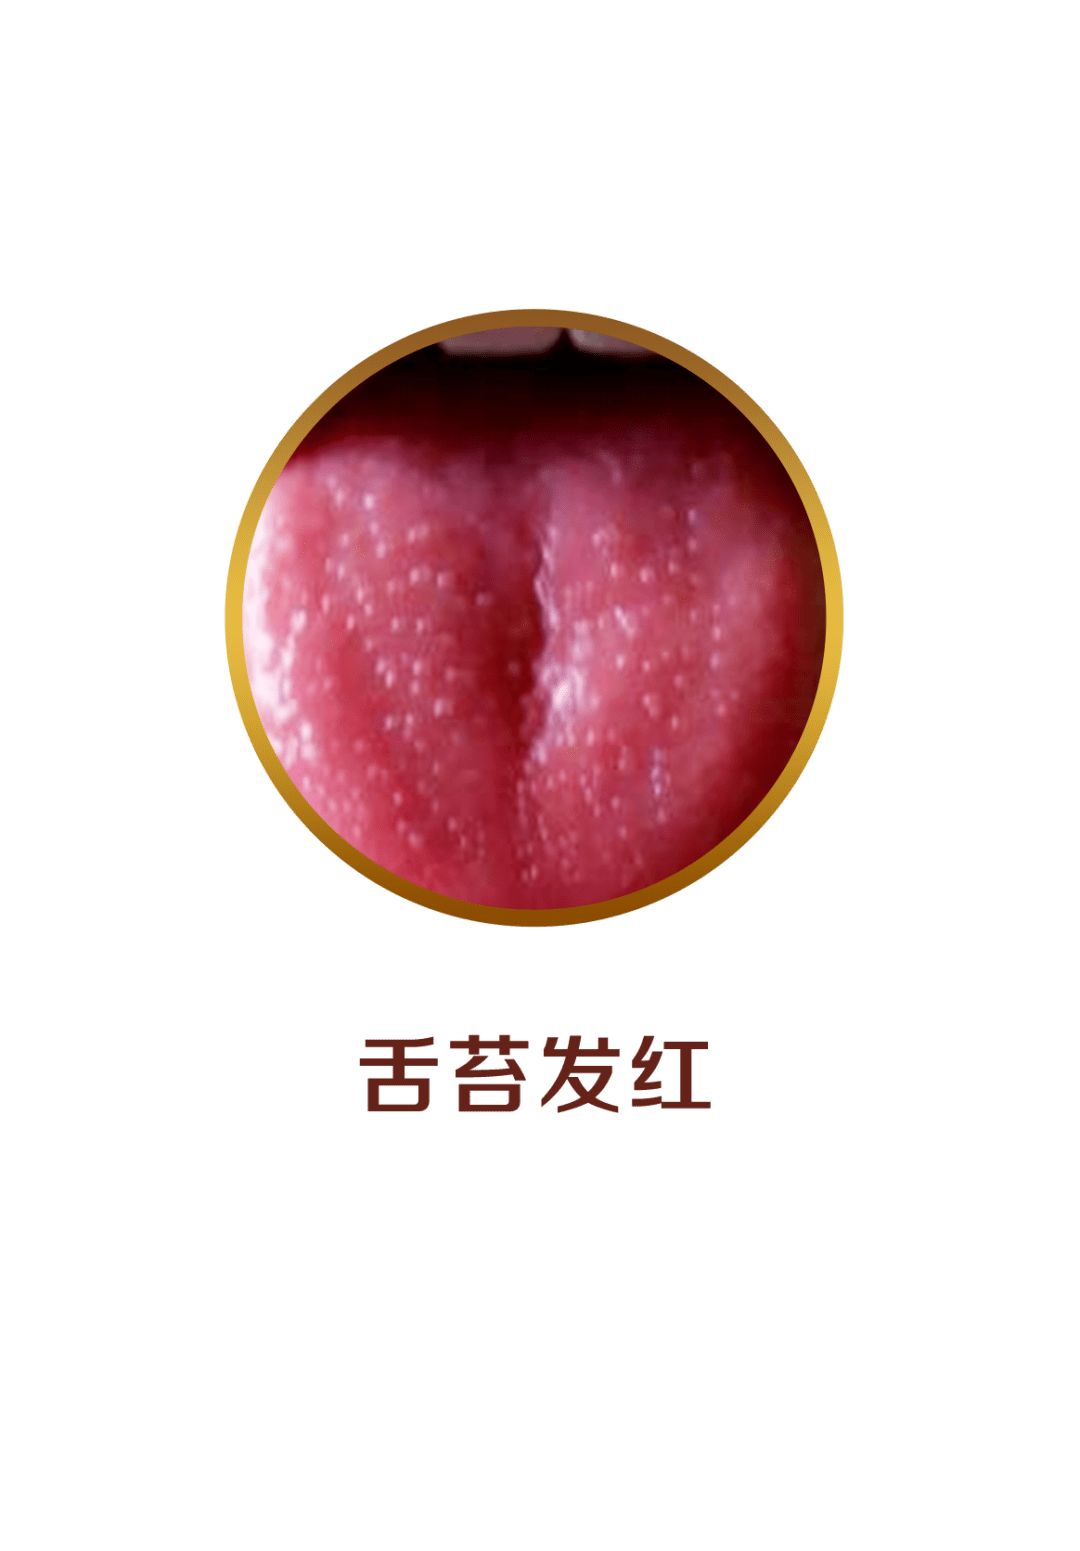 舌头两边菜花一样图片 菜花状疣初期图片